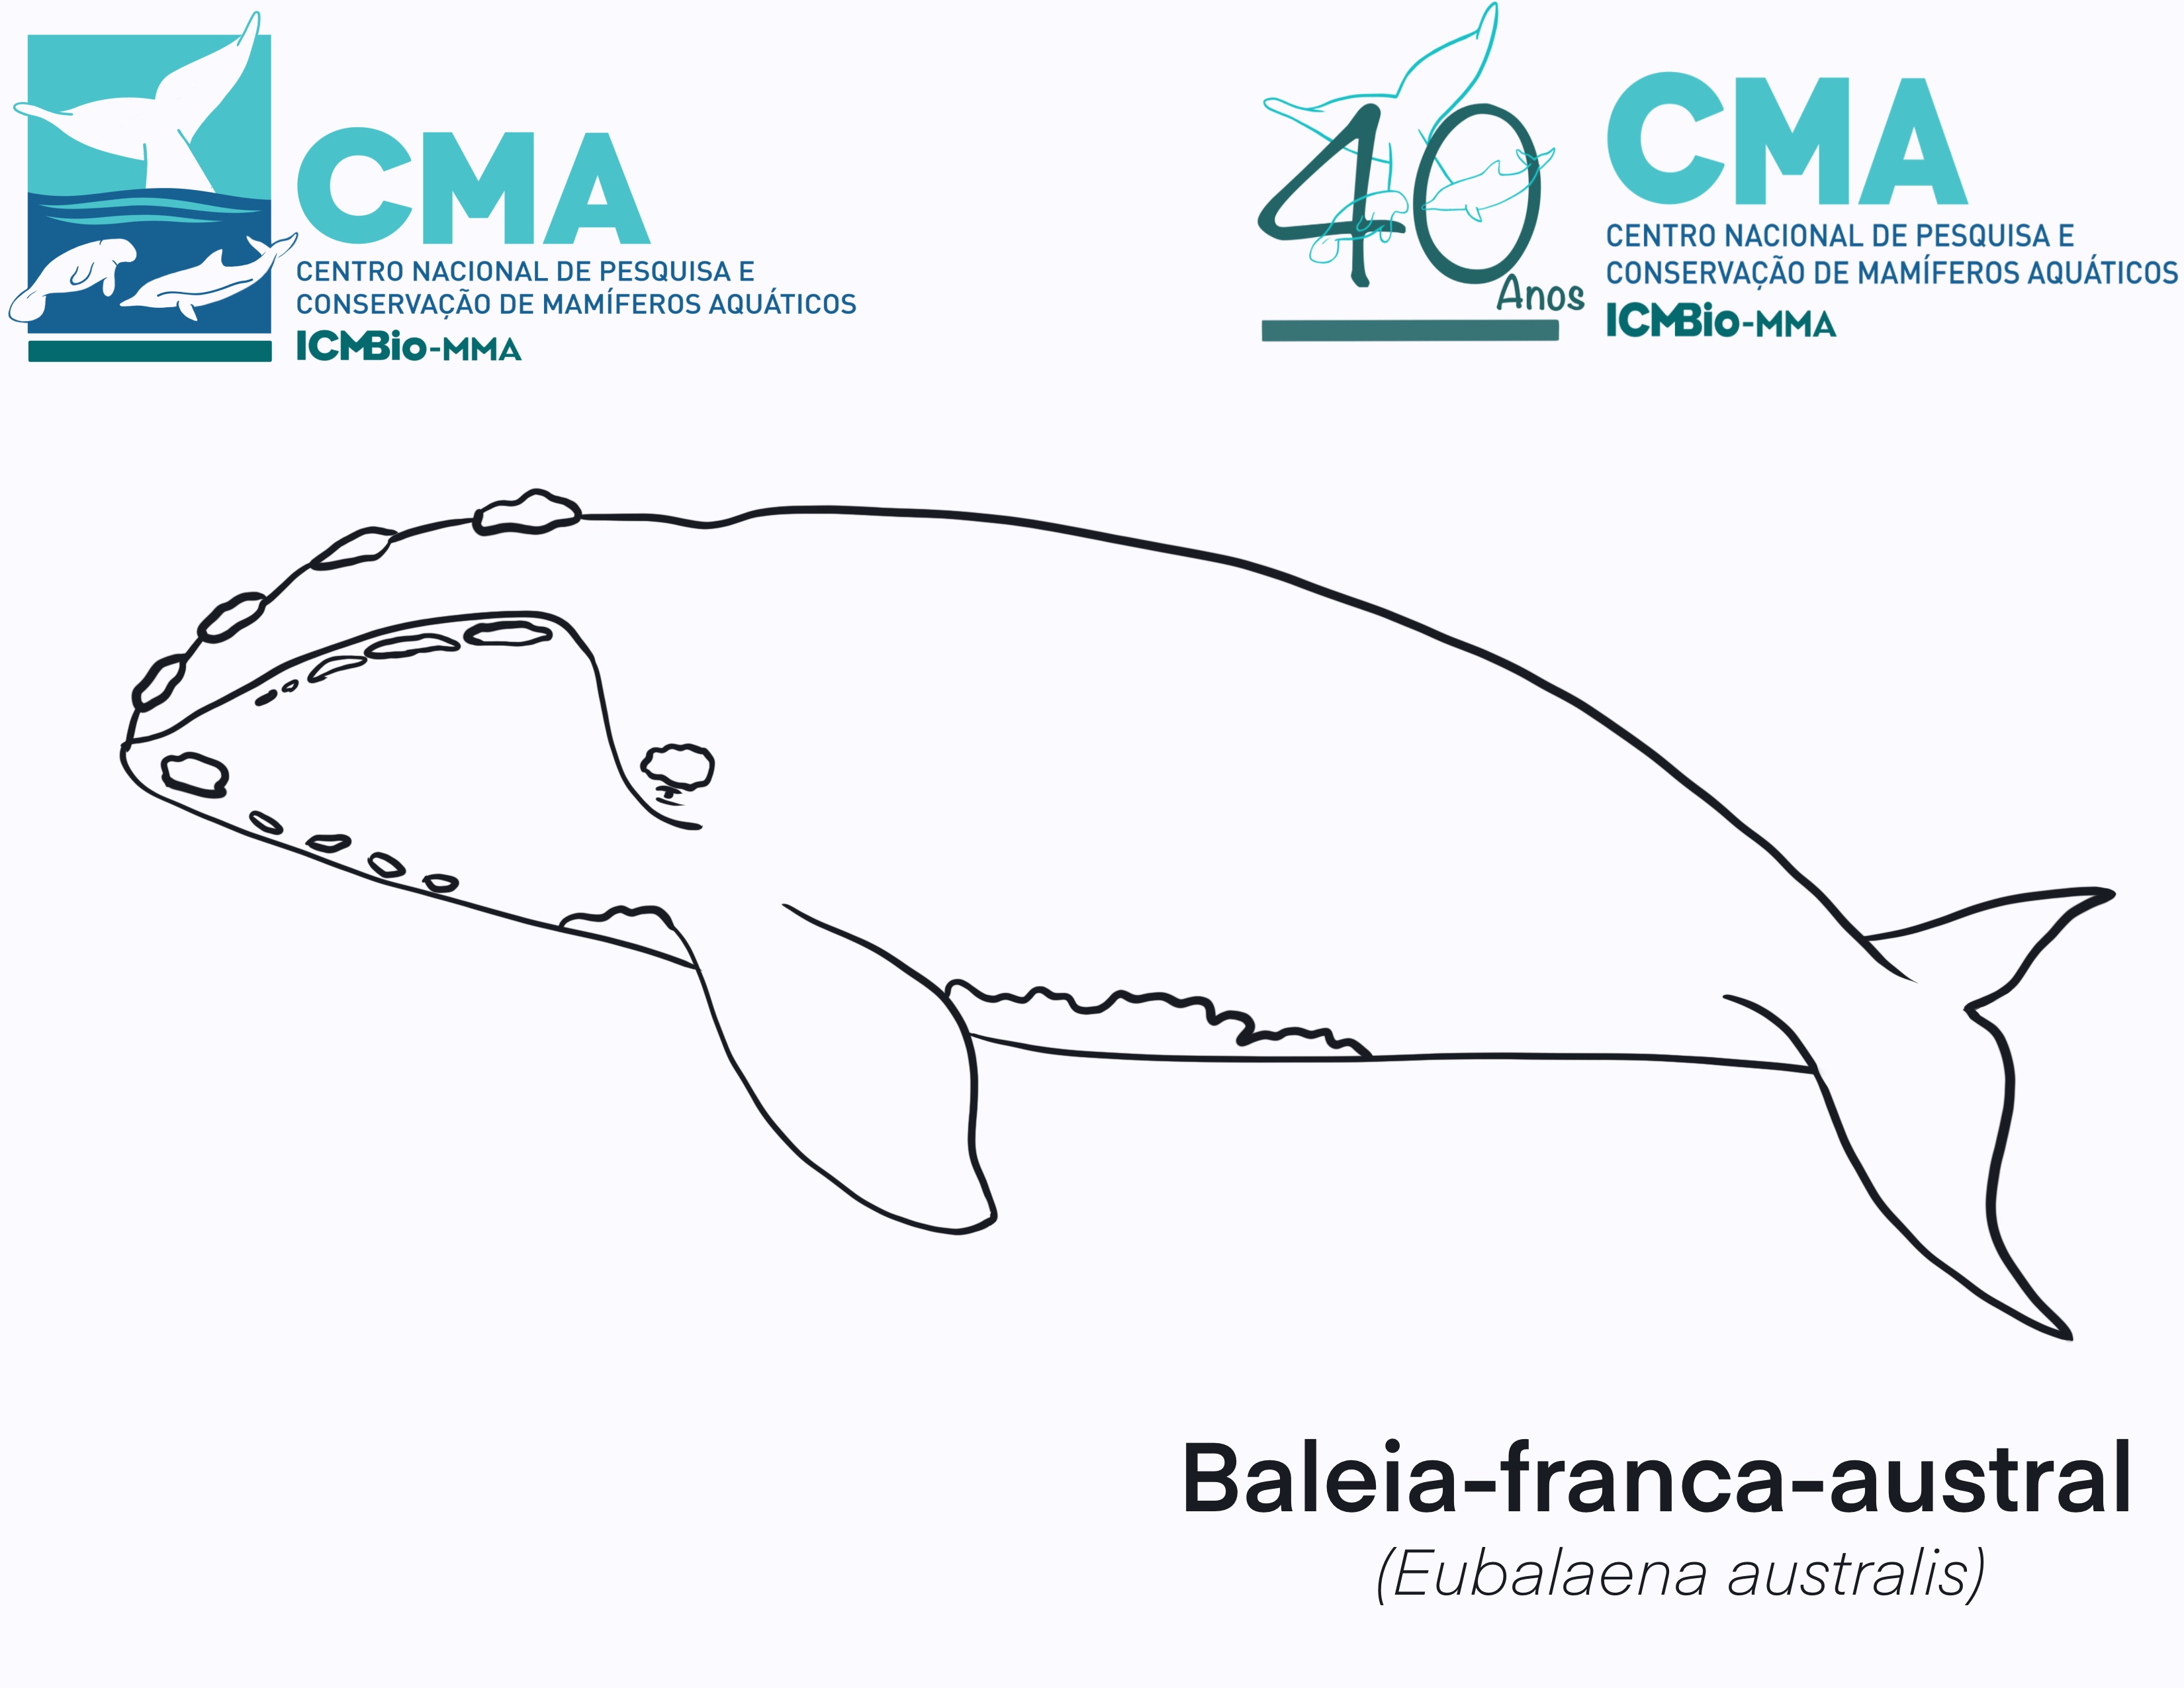 ICMBio - Centro Nacional de Pesquisa e Conservação de Mamíferos Aquáticos -  CMA comemora Dia das Crianças com ilustrações